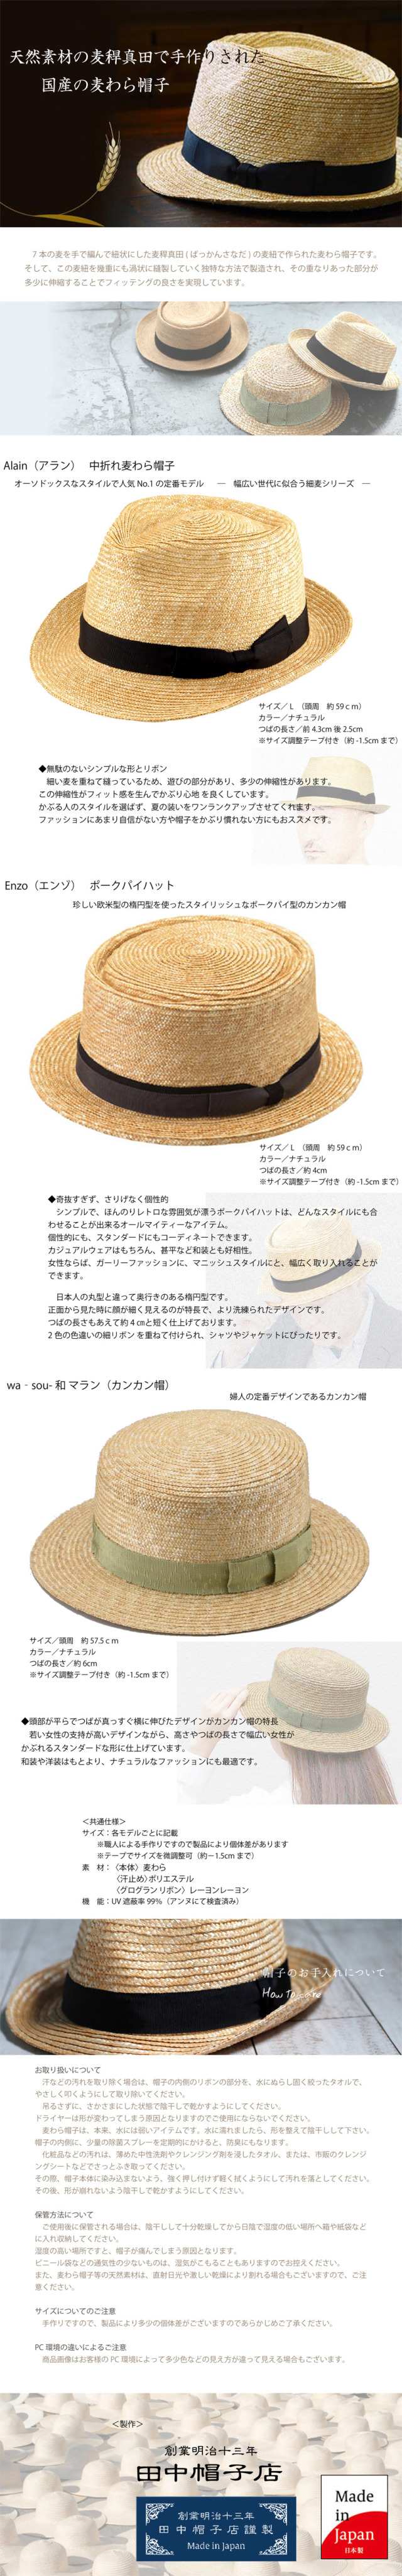 実用性とファッション性とを両立した天然素材の麦わら帽子